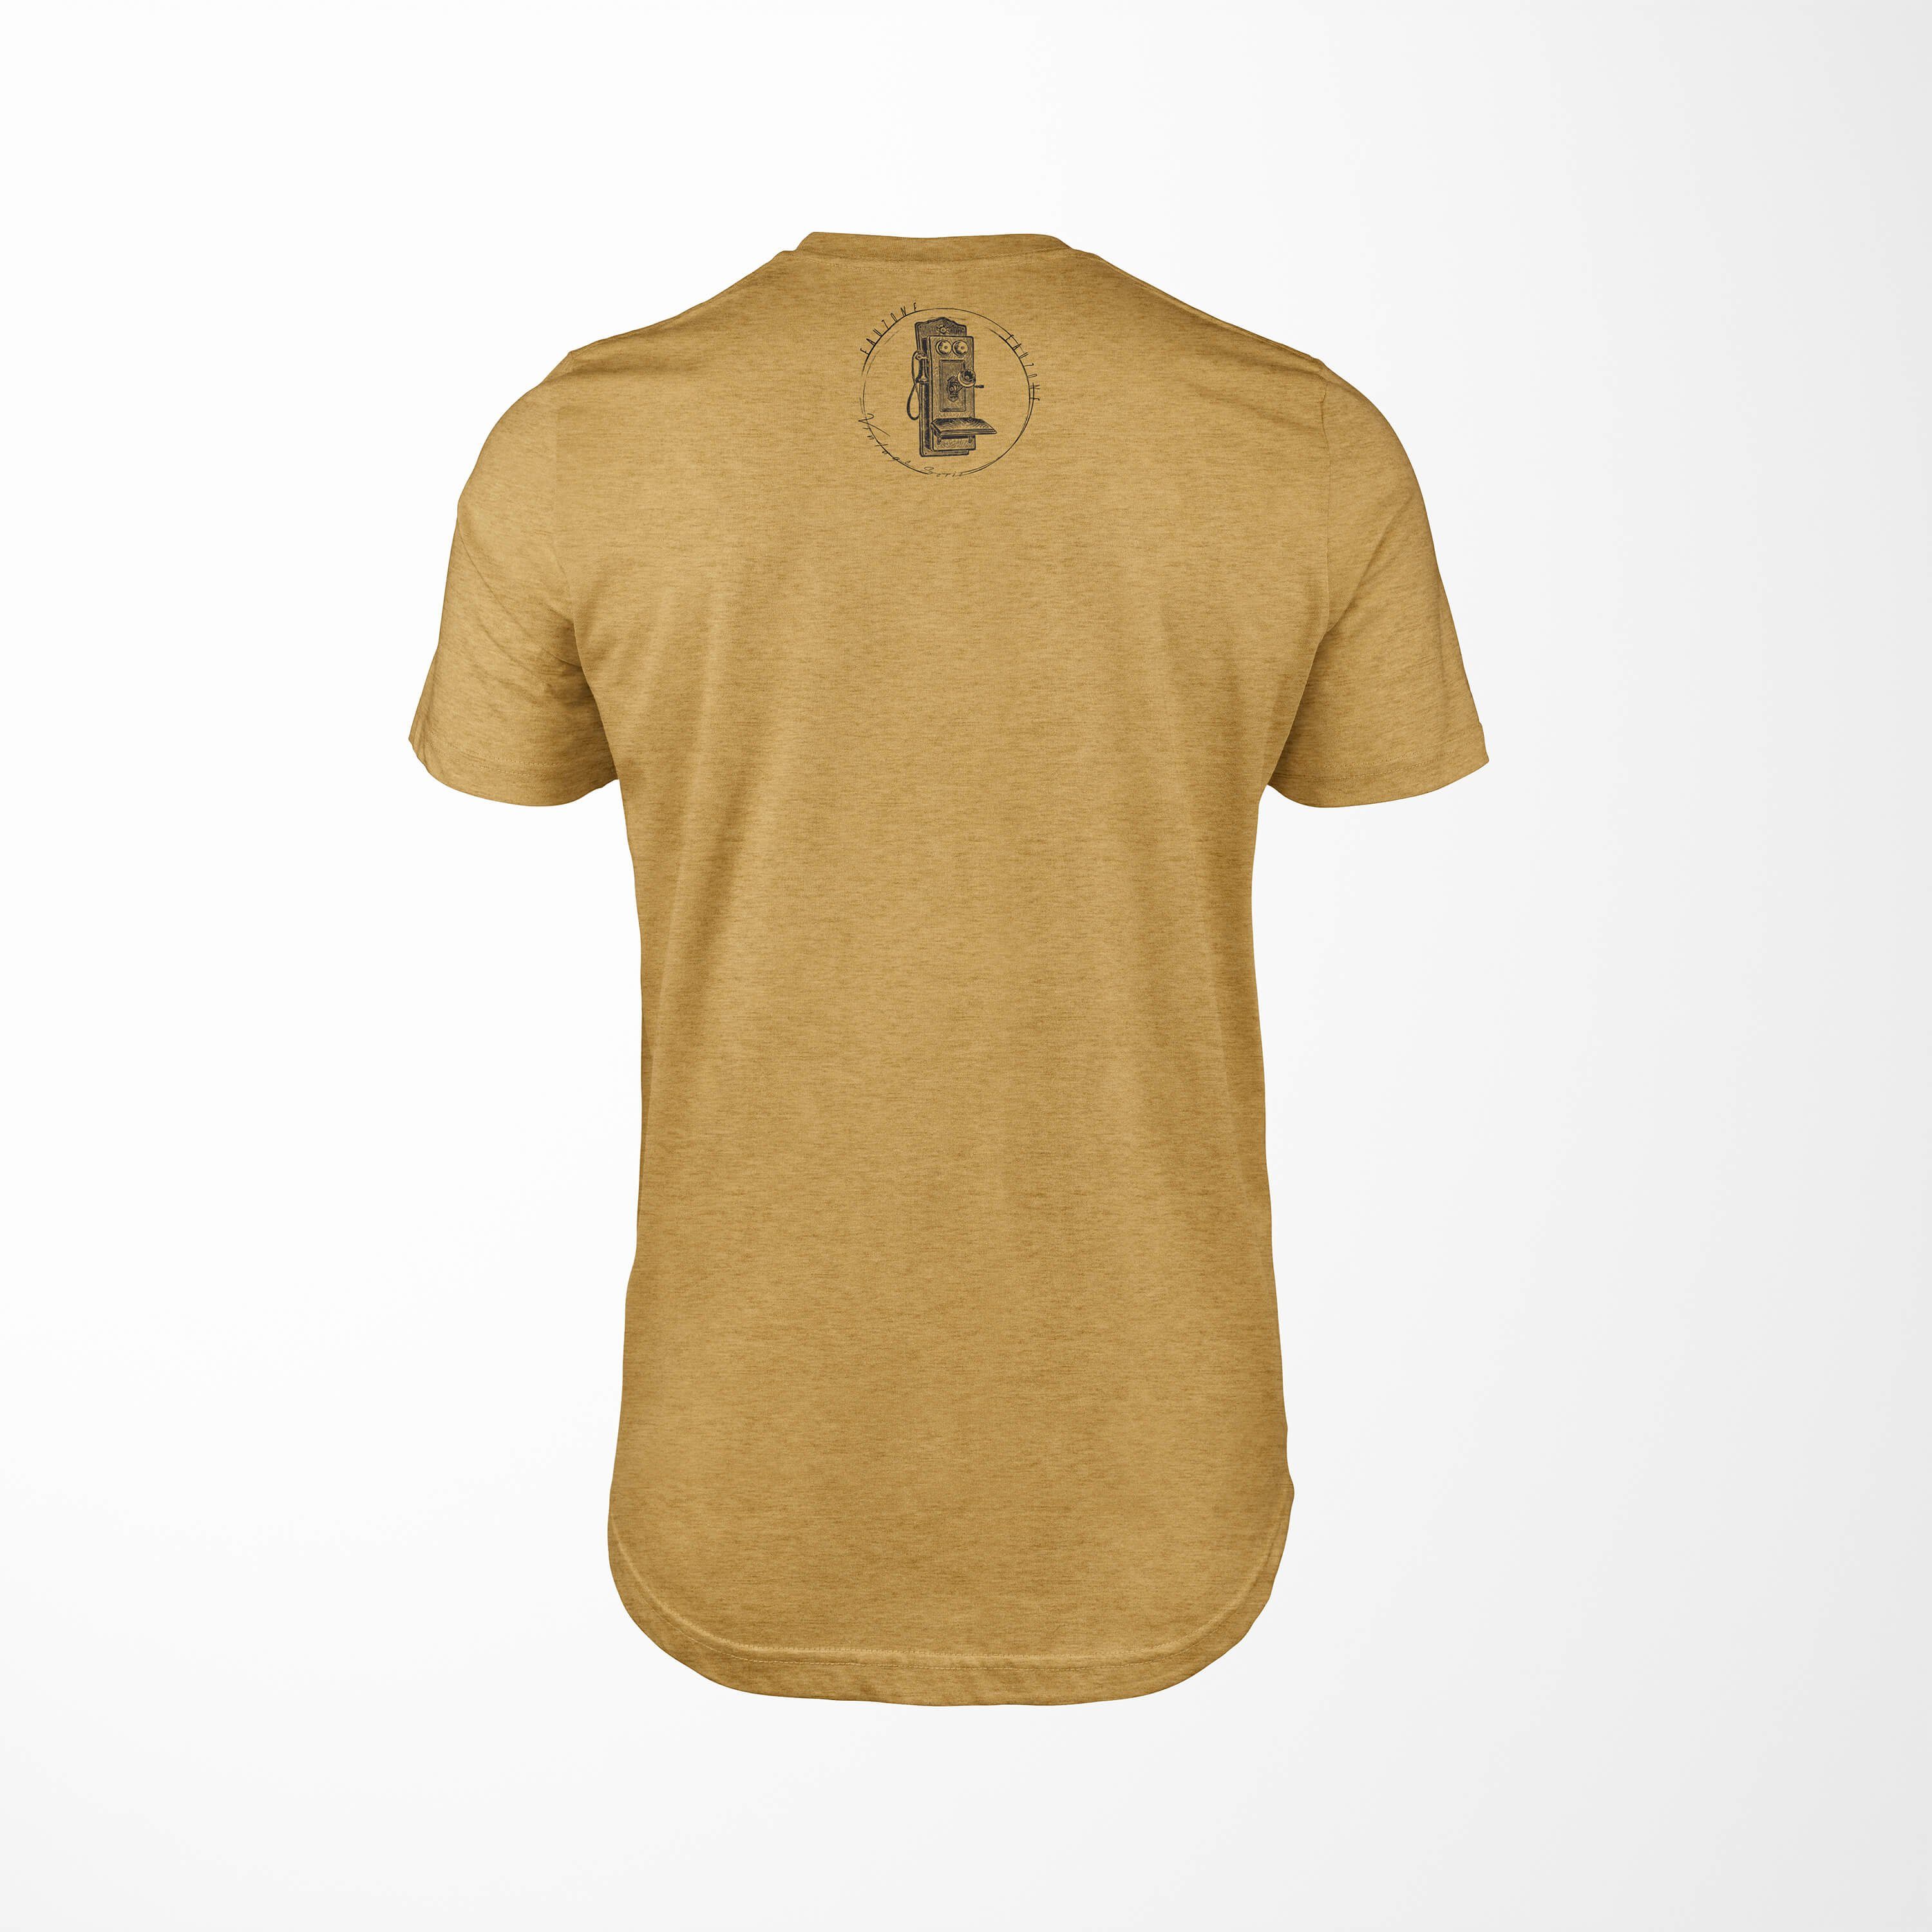 Vintage T-Shirt Antique Sinus Art T-Shirt Herren Telefonkasten Gold